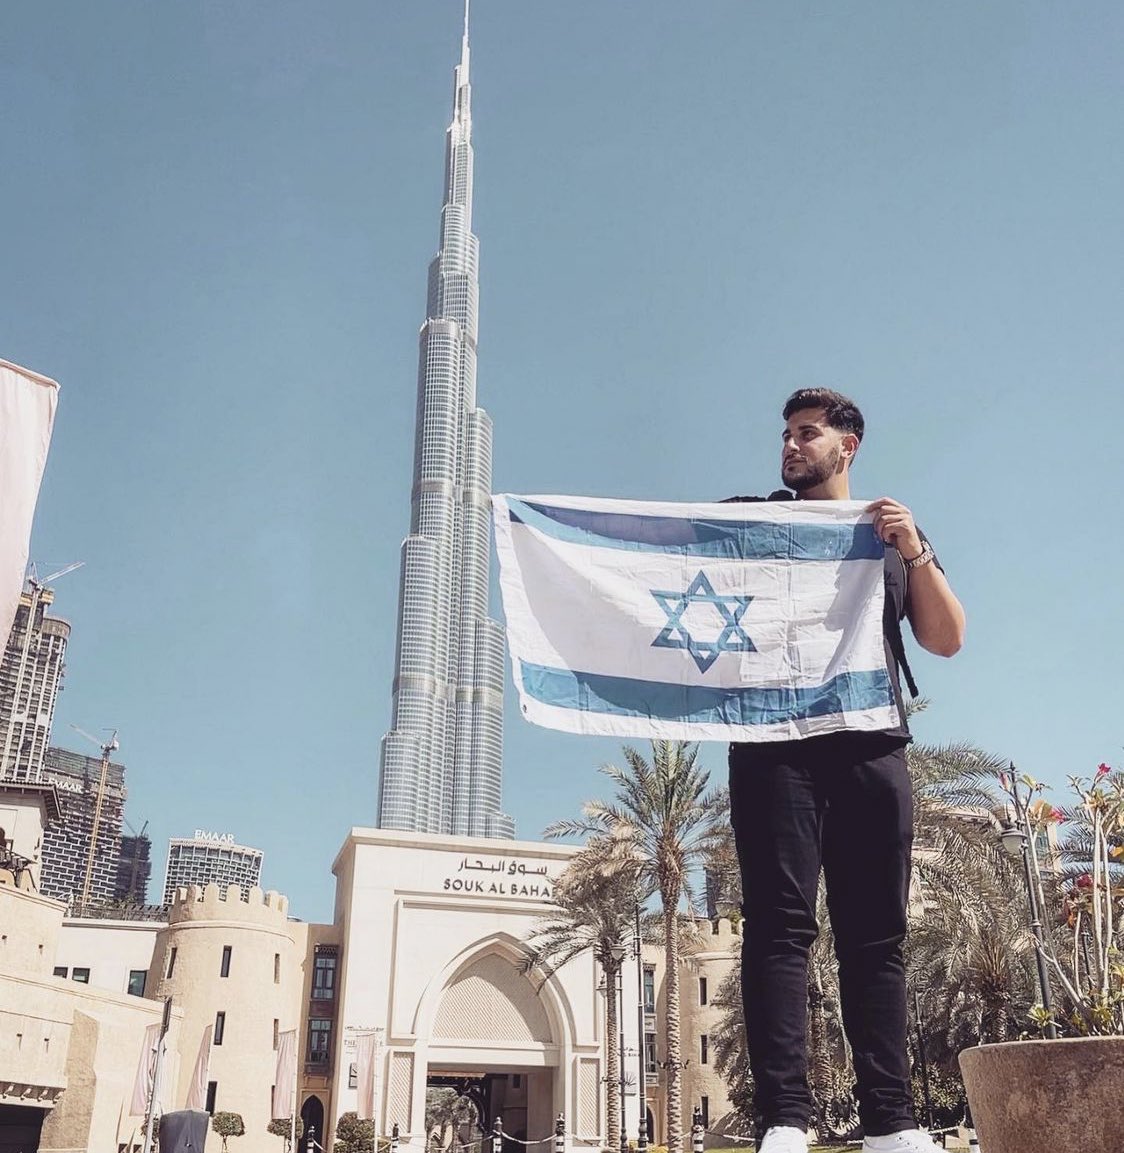 مواطن اسرائيلي يرفع العلم الاسرائيلي بكل فخر في الامارات العربية المتحدة @rudy_rochman …